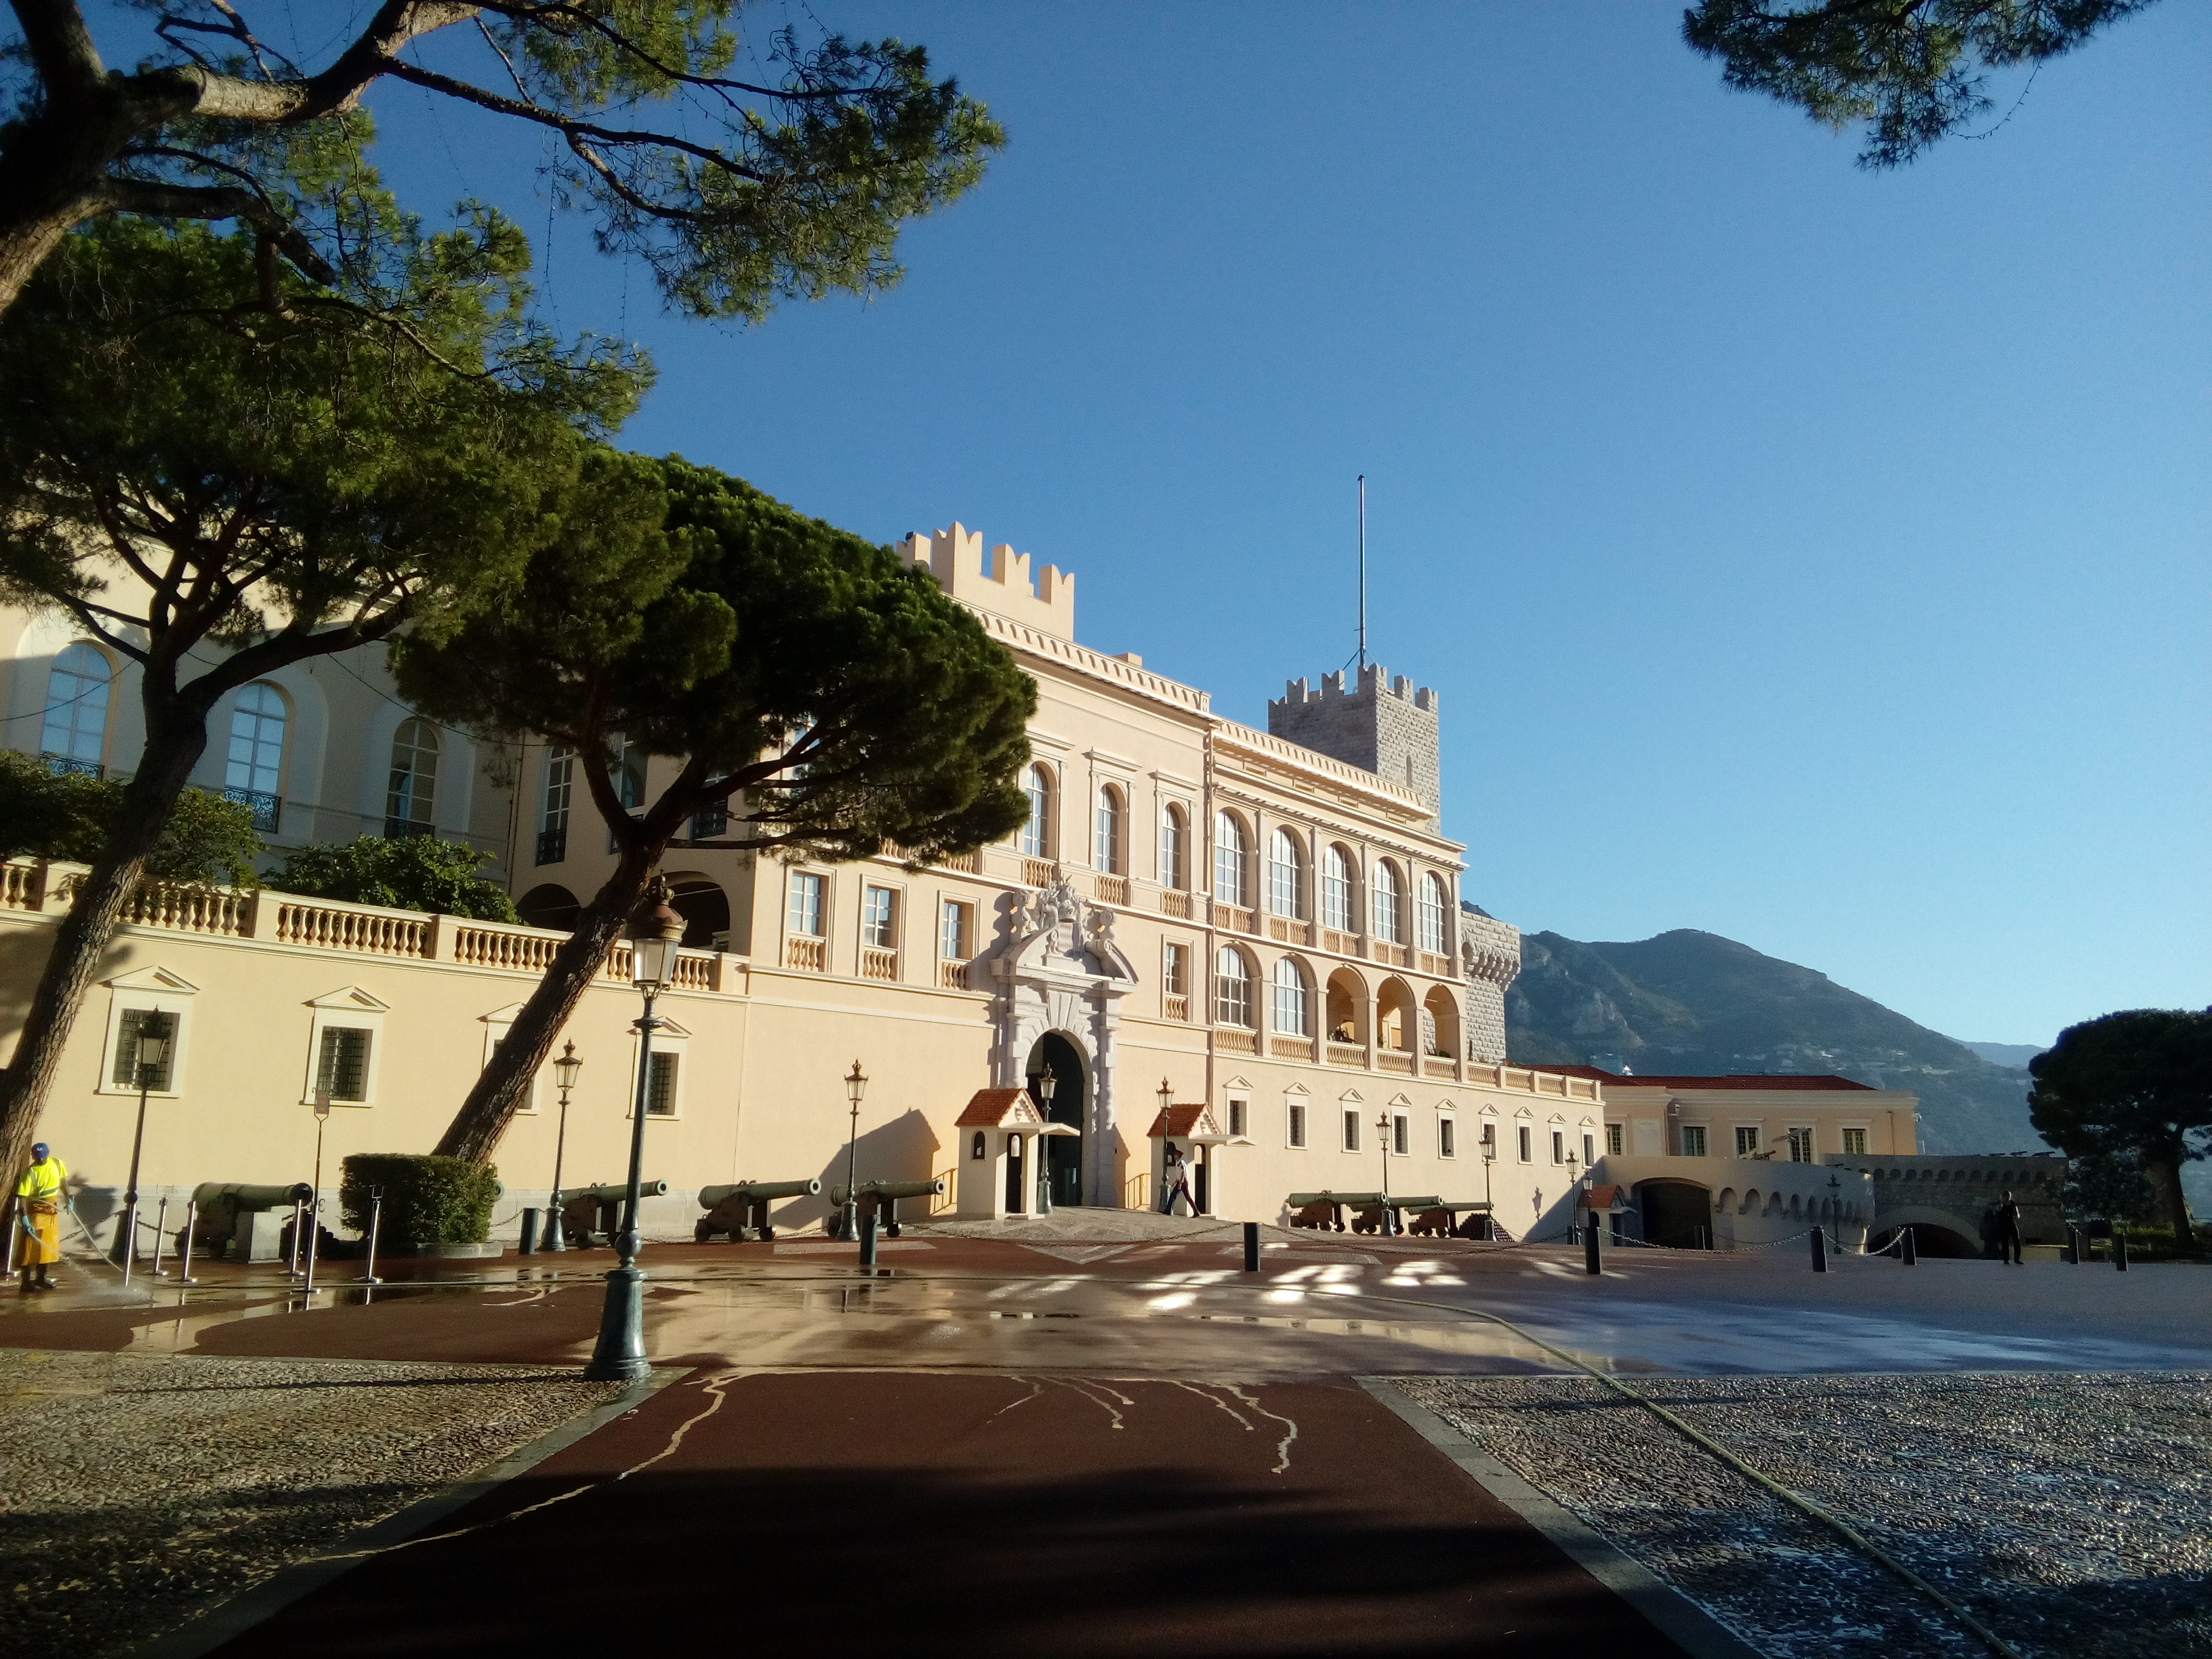 Incontri dei Siti Storici Grimaldi di Monaco: Spettacoli e Giochi ad Inizio Estate nella Piazza del Palazzo